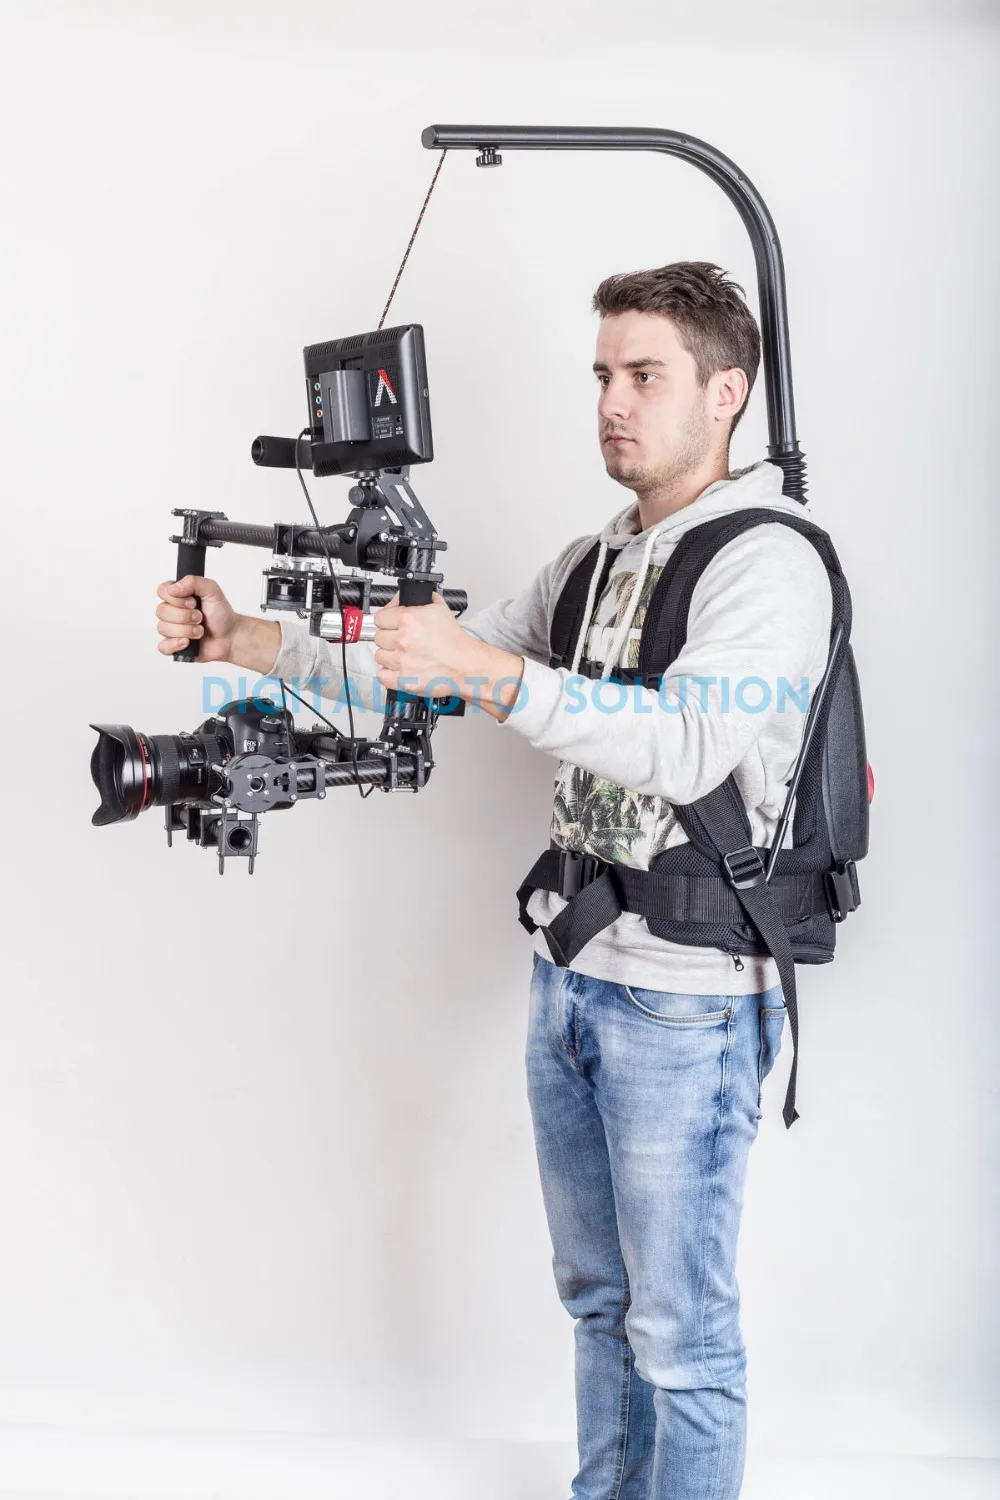 Как EASYRIG 1-18 кг видео и фильм Serene камера для DJI Ronin S/M Crane 2/3 WEEBILL LAB MOZA AirX 3 оси карданный стабилизатор жилет